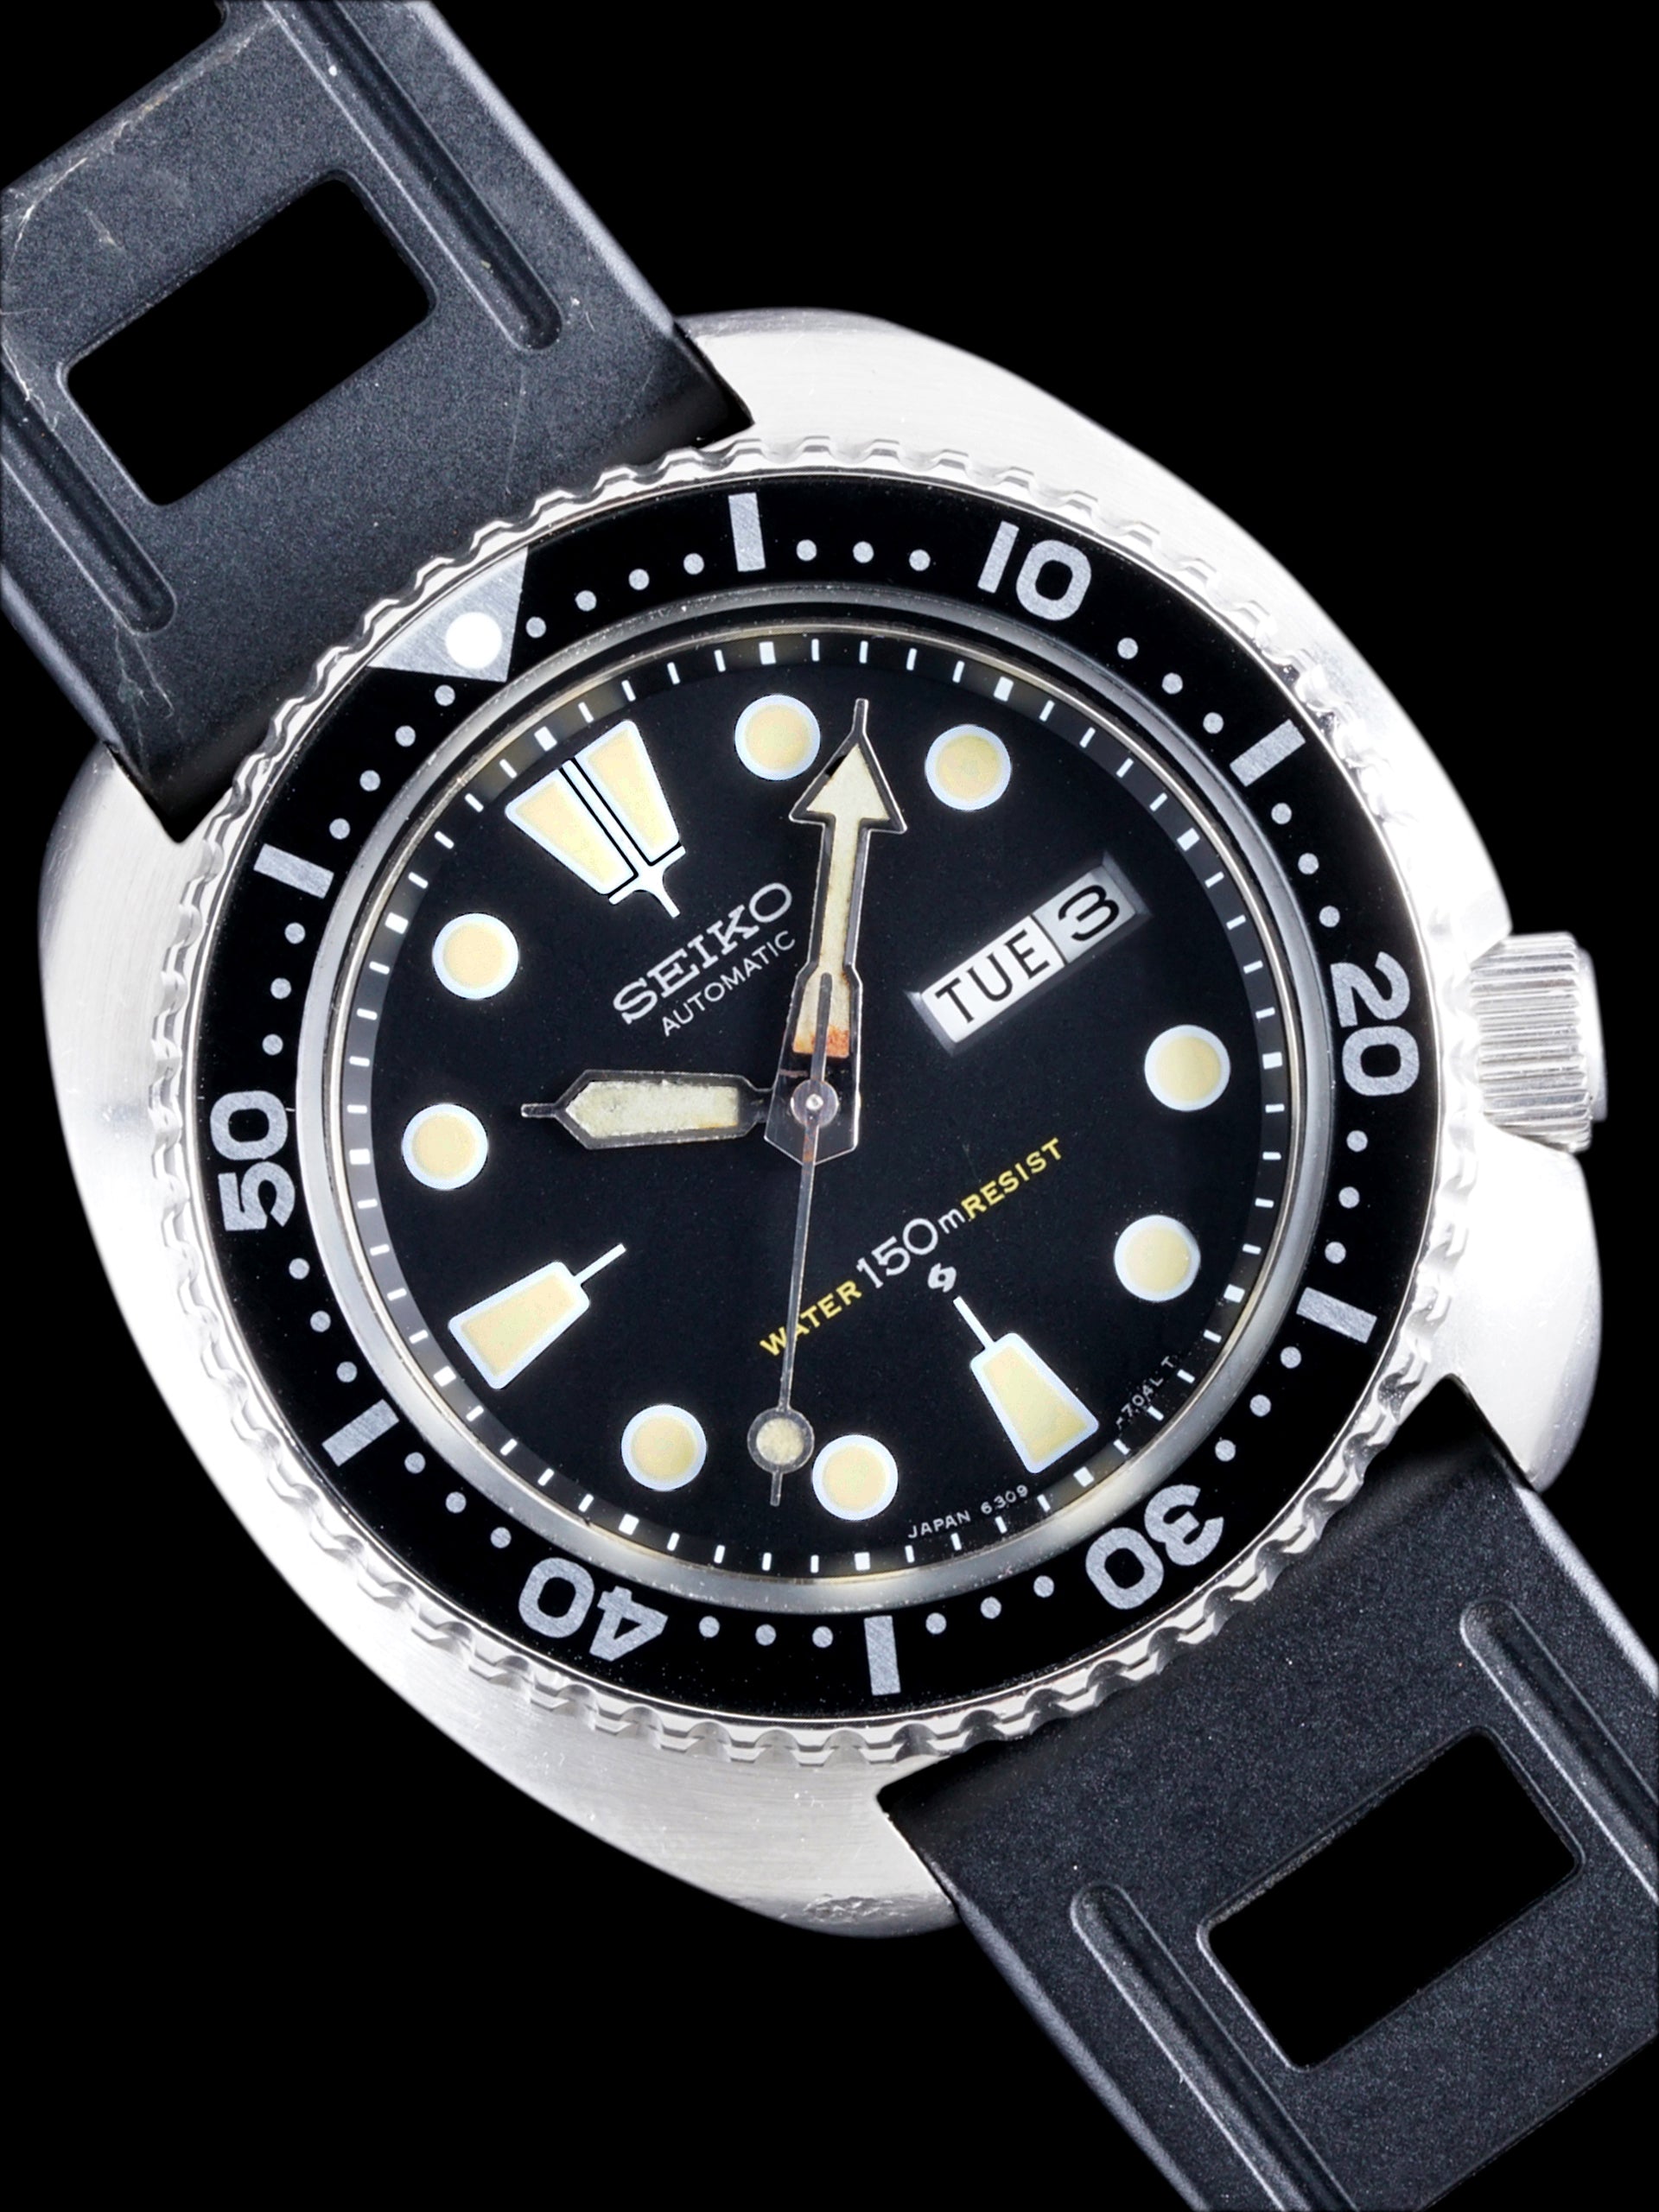 1977 Seiko Diver (Ref. 6309-7049)